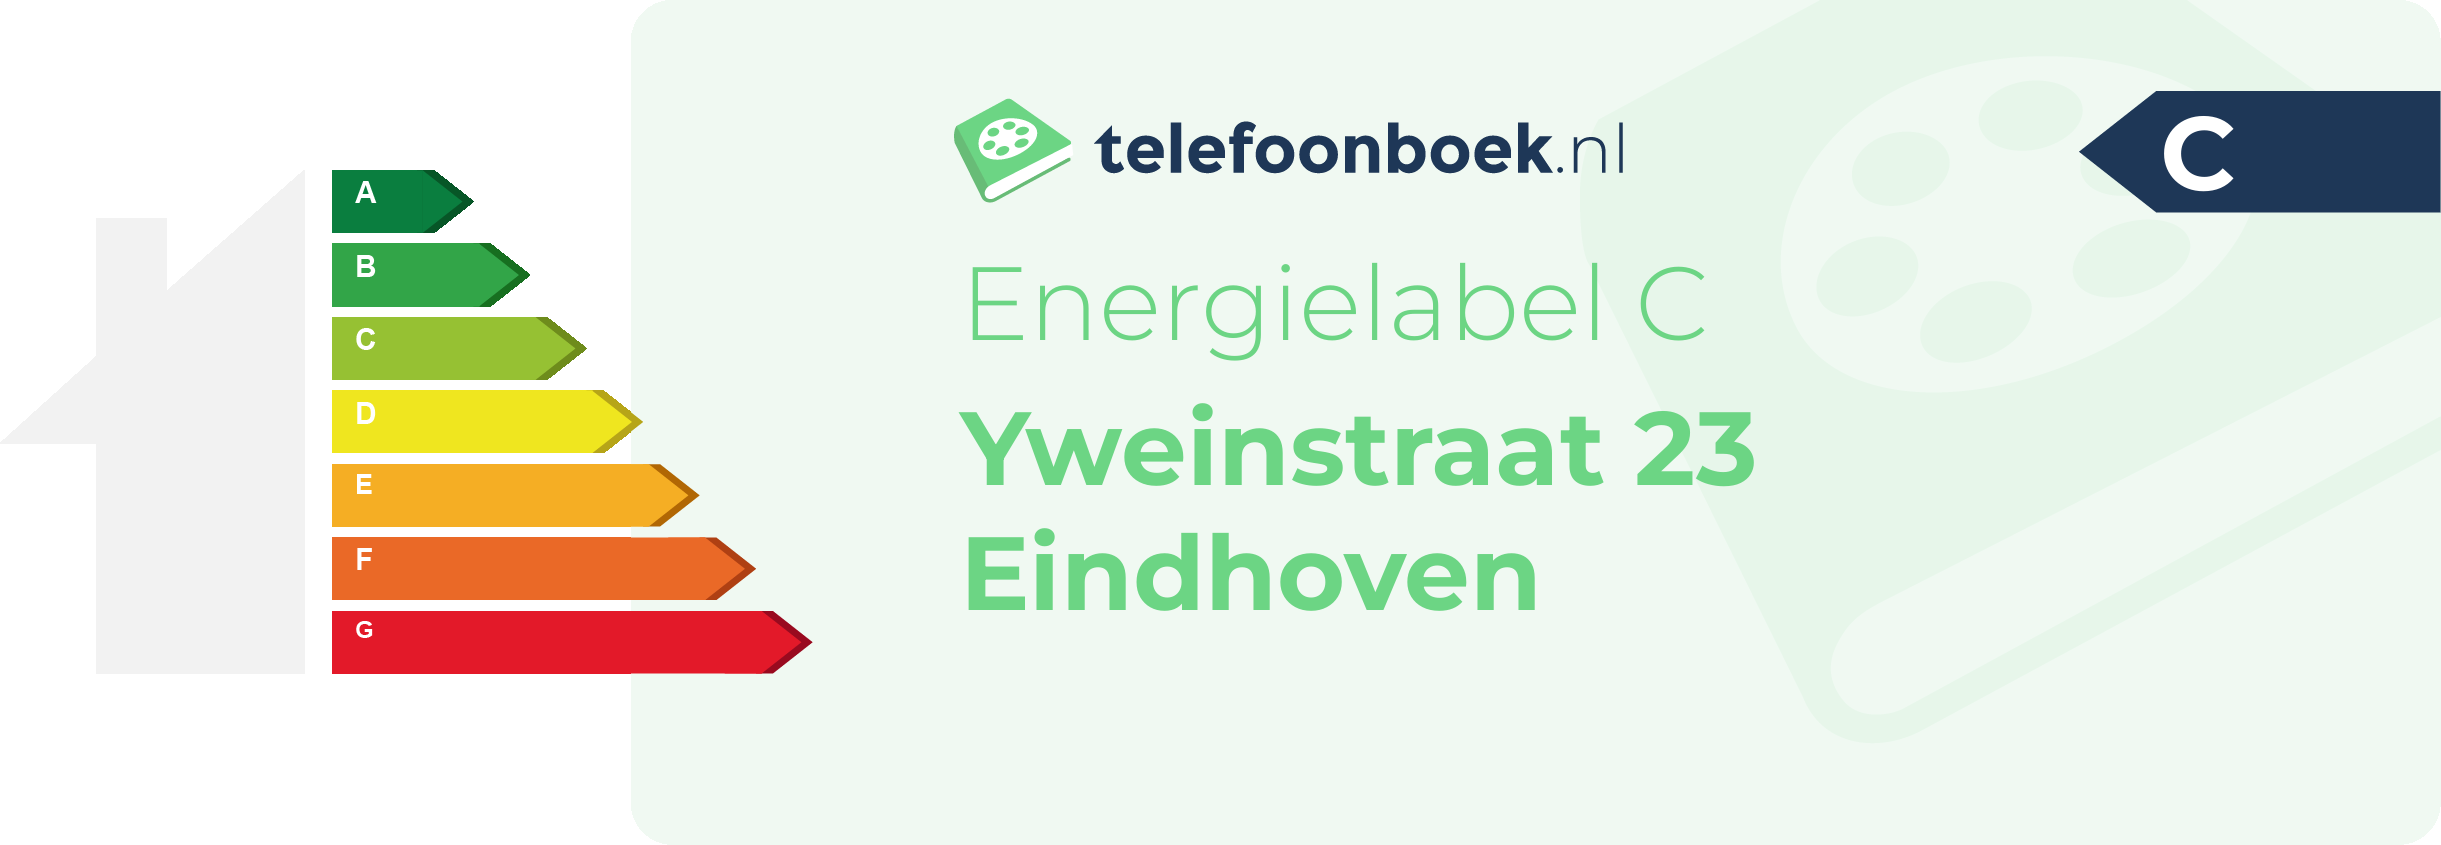 Energielabel Yweinstraat 23 Eindhoven